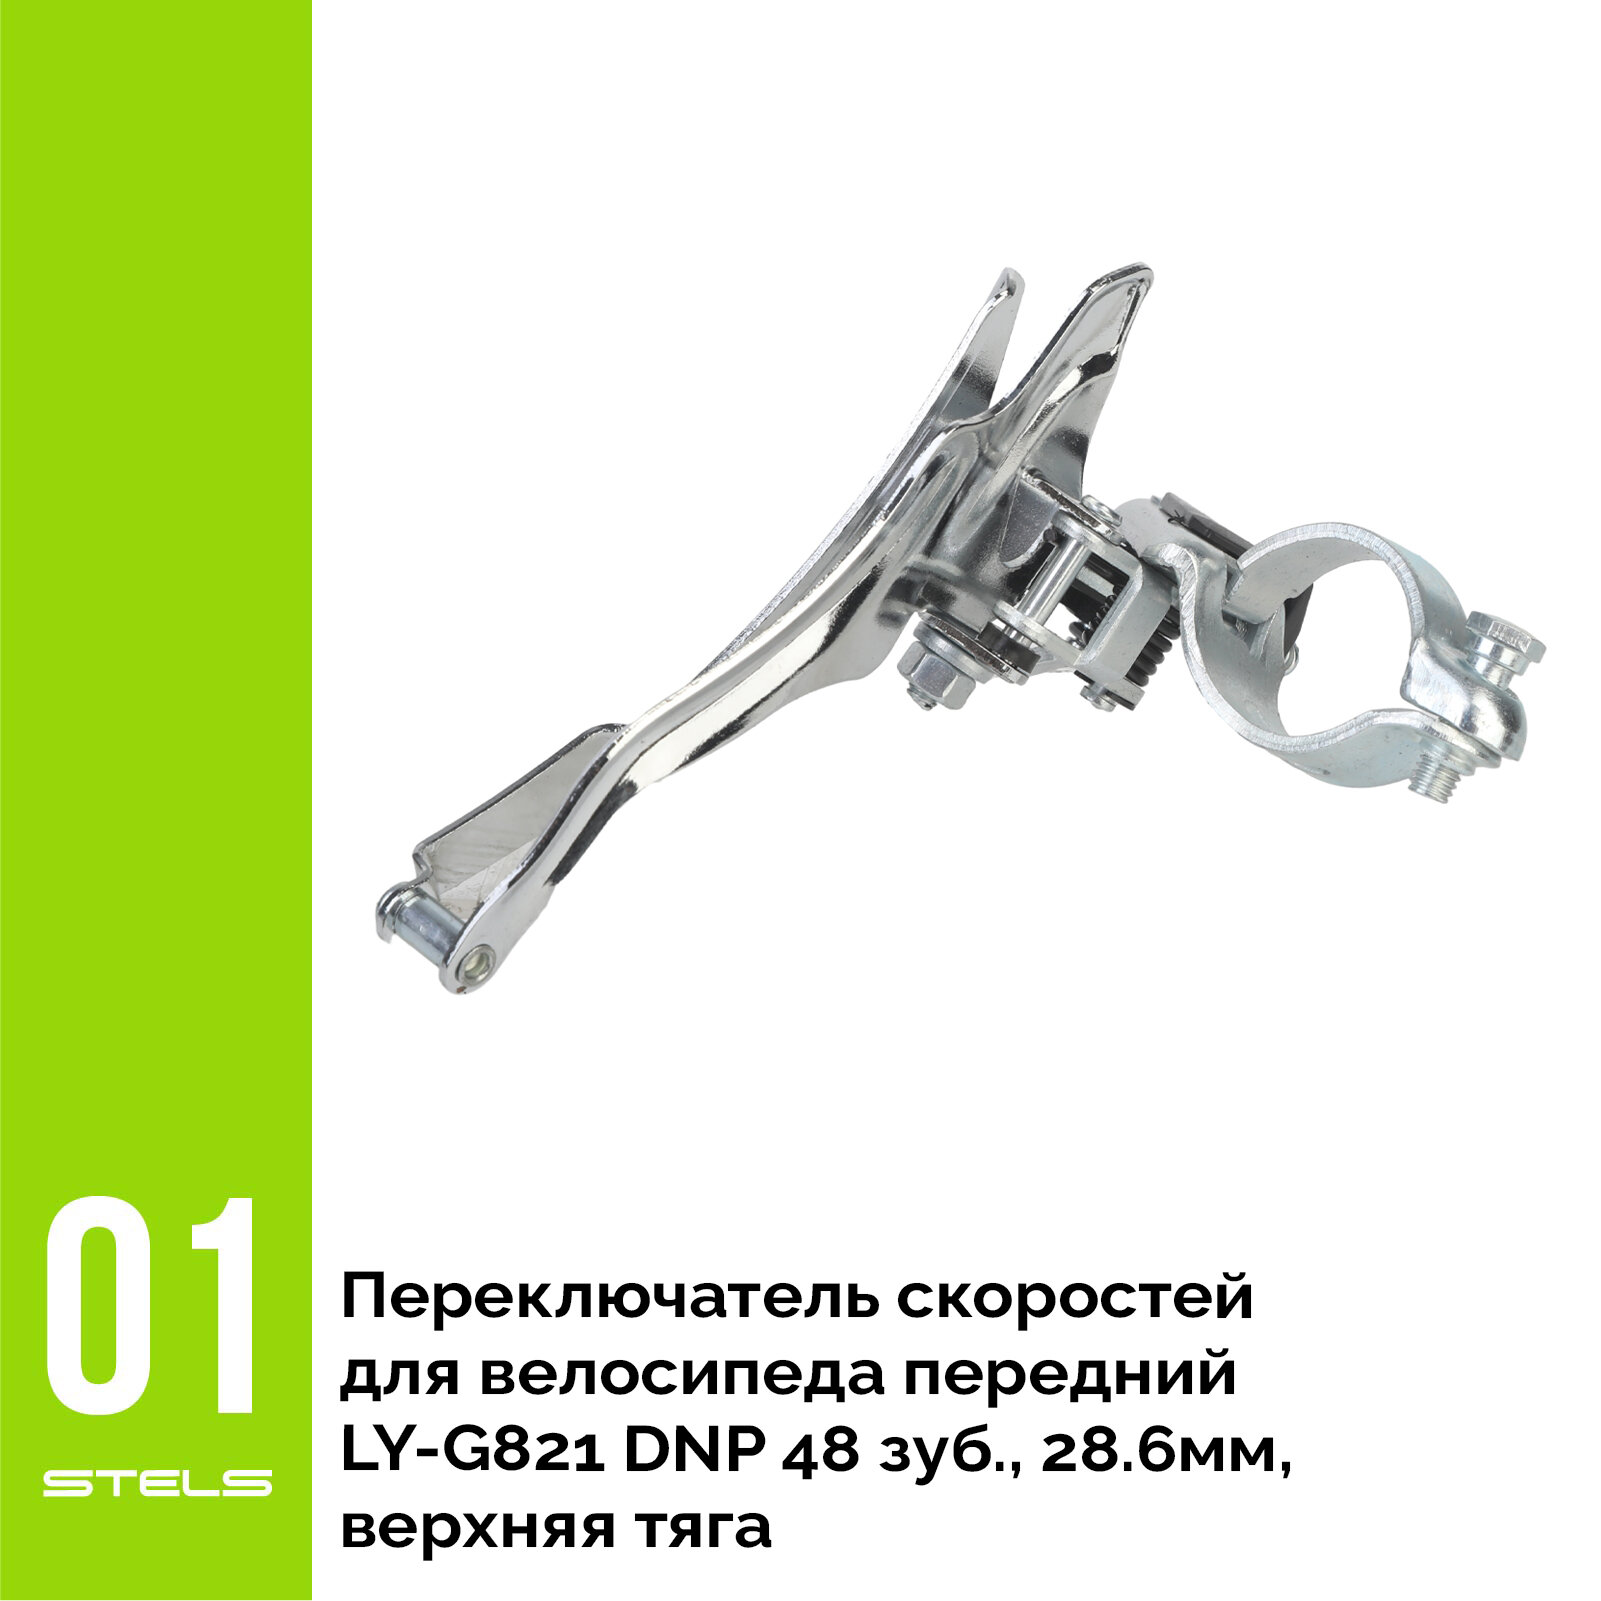 Переключатель скоростей для велосипеда передний LY-G821 DNP 48 зуб, 28.6мм, верхняя тяга VELOSALE